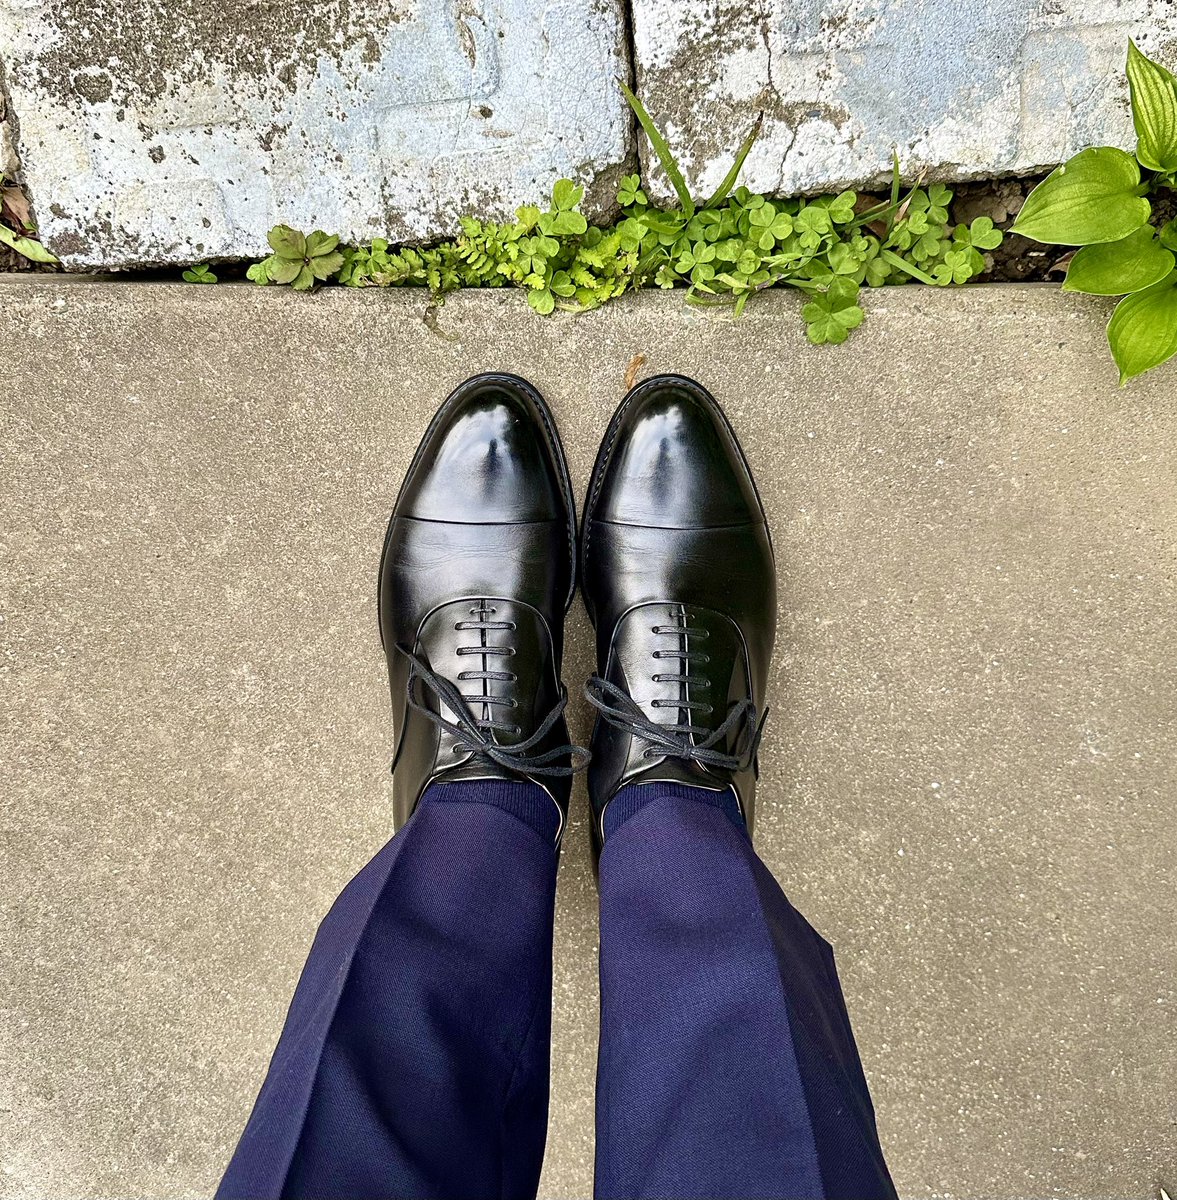 三陽山長

週末に買ったスーツをおろしました。
薄手でサラッとした生地、26℃まで上がる予報なので大丈夫そう。
春が一瞬で終わりそうな気配ですね。

#三陽山長 #紳士靴 #革靴 #今日の足元 #マッキントッシュロンドン #sanyoyamacho #shoes #mensshoes #sotd #shoesoftheday #mackintoshlondon